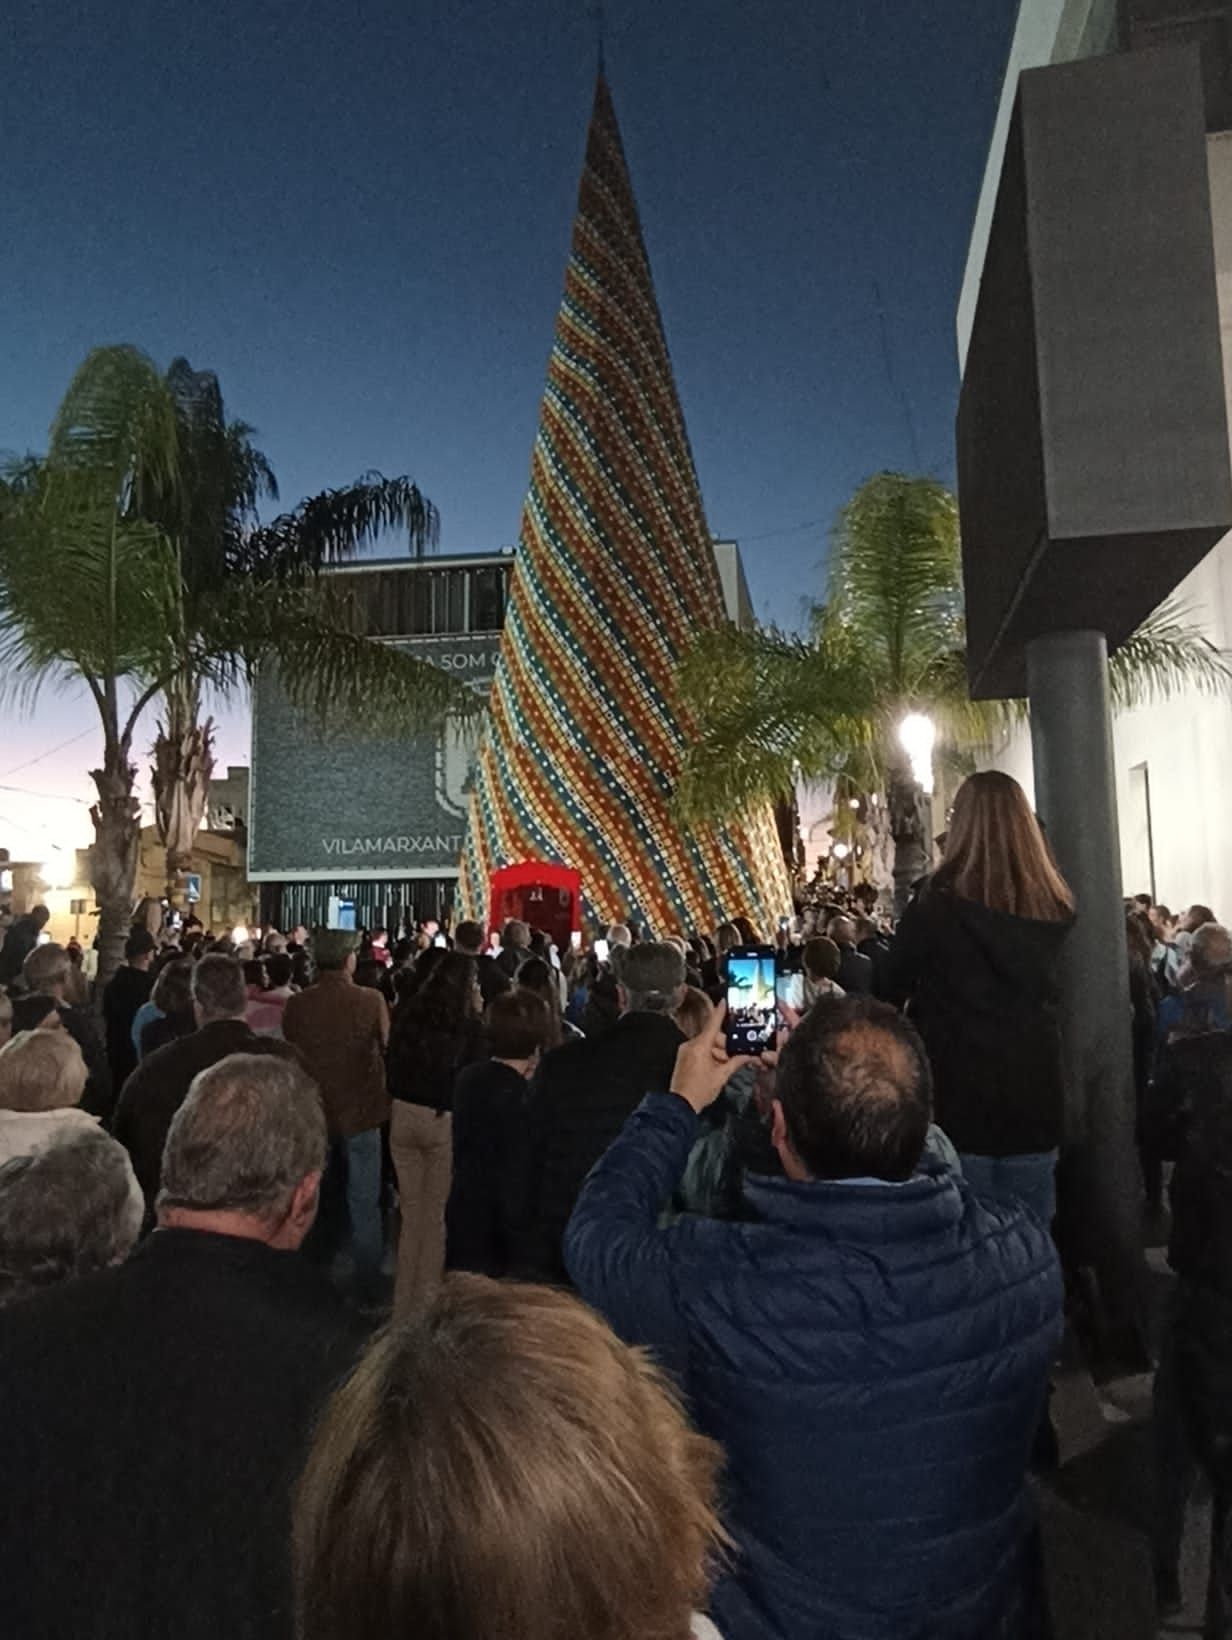 El árbol de Navidad hecho de ganchillo más grande del mundo está en Vilamarxant